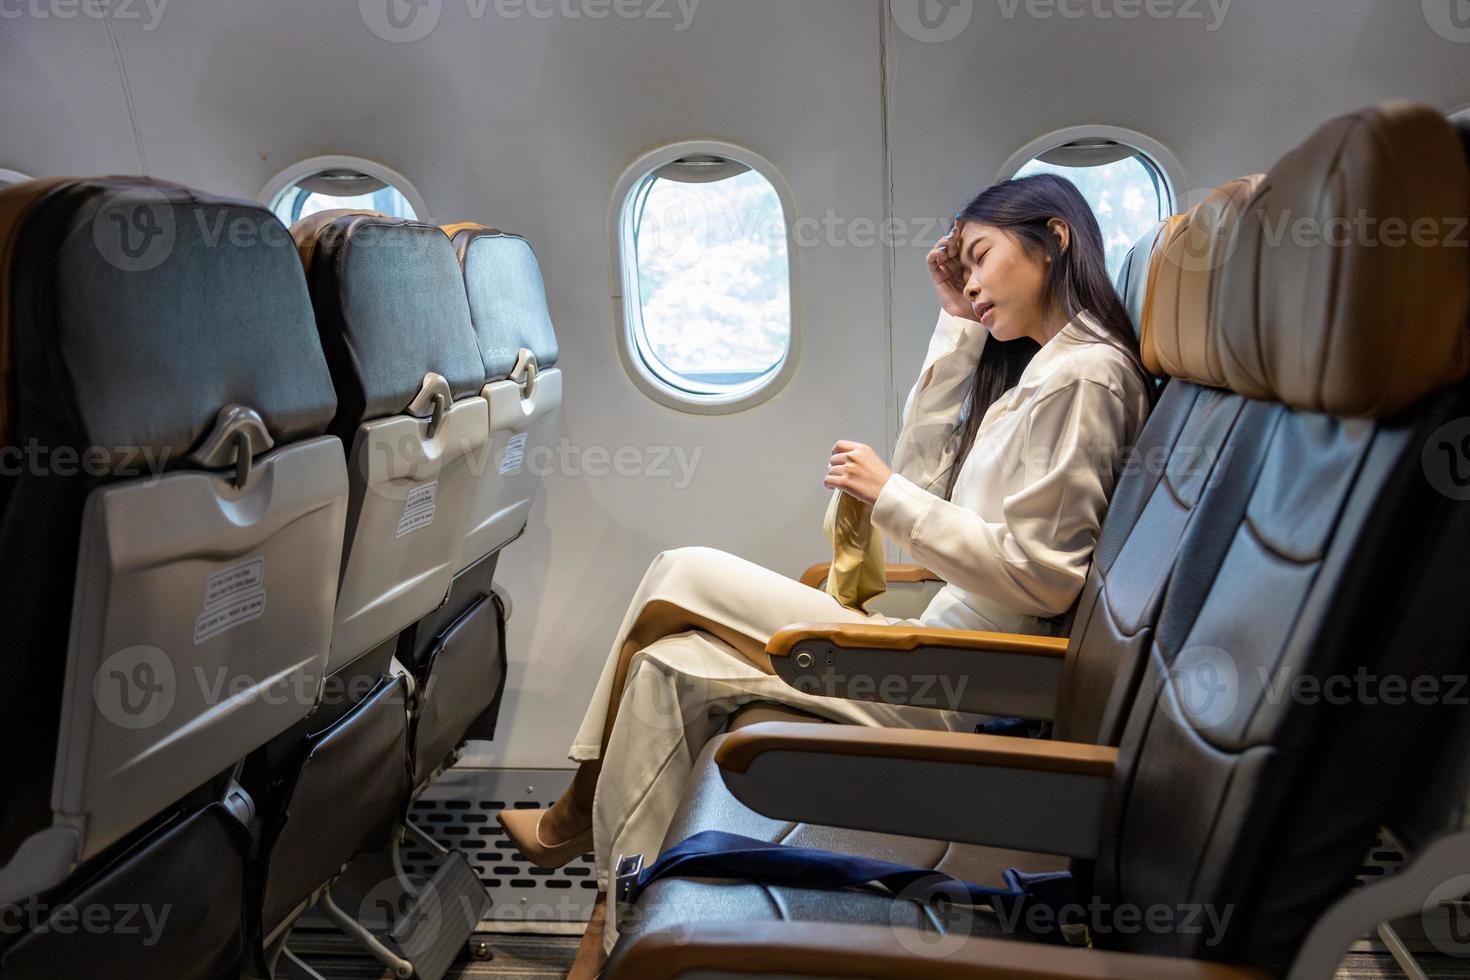 la mujer asiática se siente mareada y se aferra a la bolsa de vómitos durante el vuelo en el avión debido al movimiento y la enfermedad del viaje que causan mareos por aerofobia y transporte foto